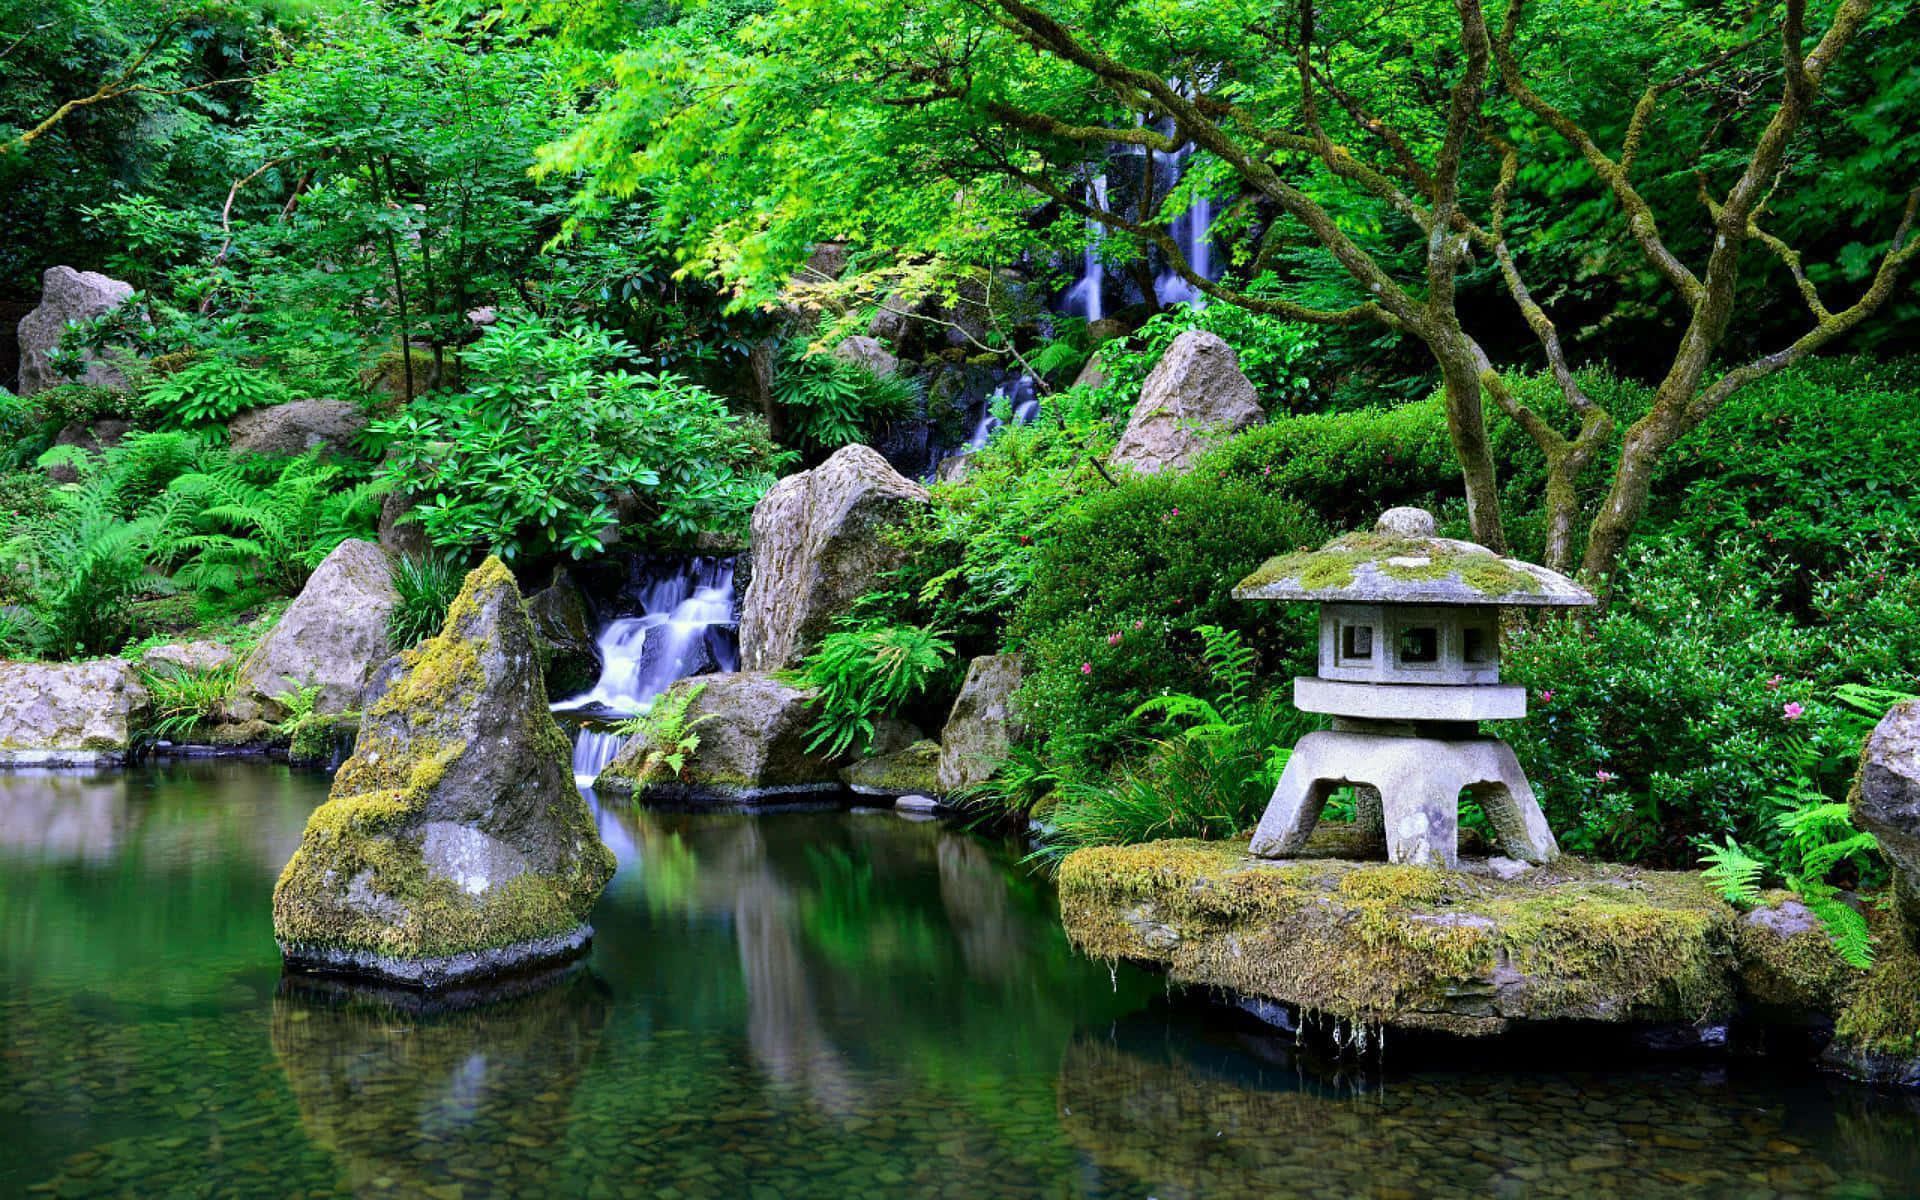 Caption: A Tranquil Samurai Garden Oasis Wallpaper